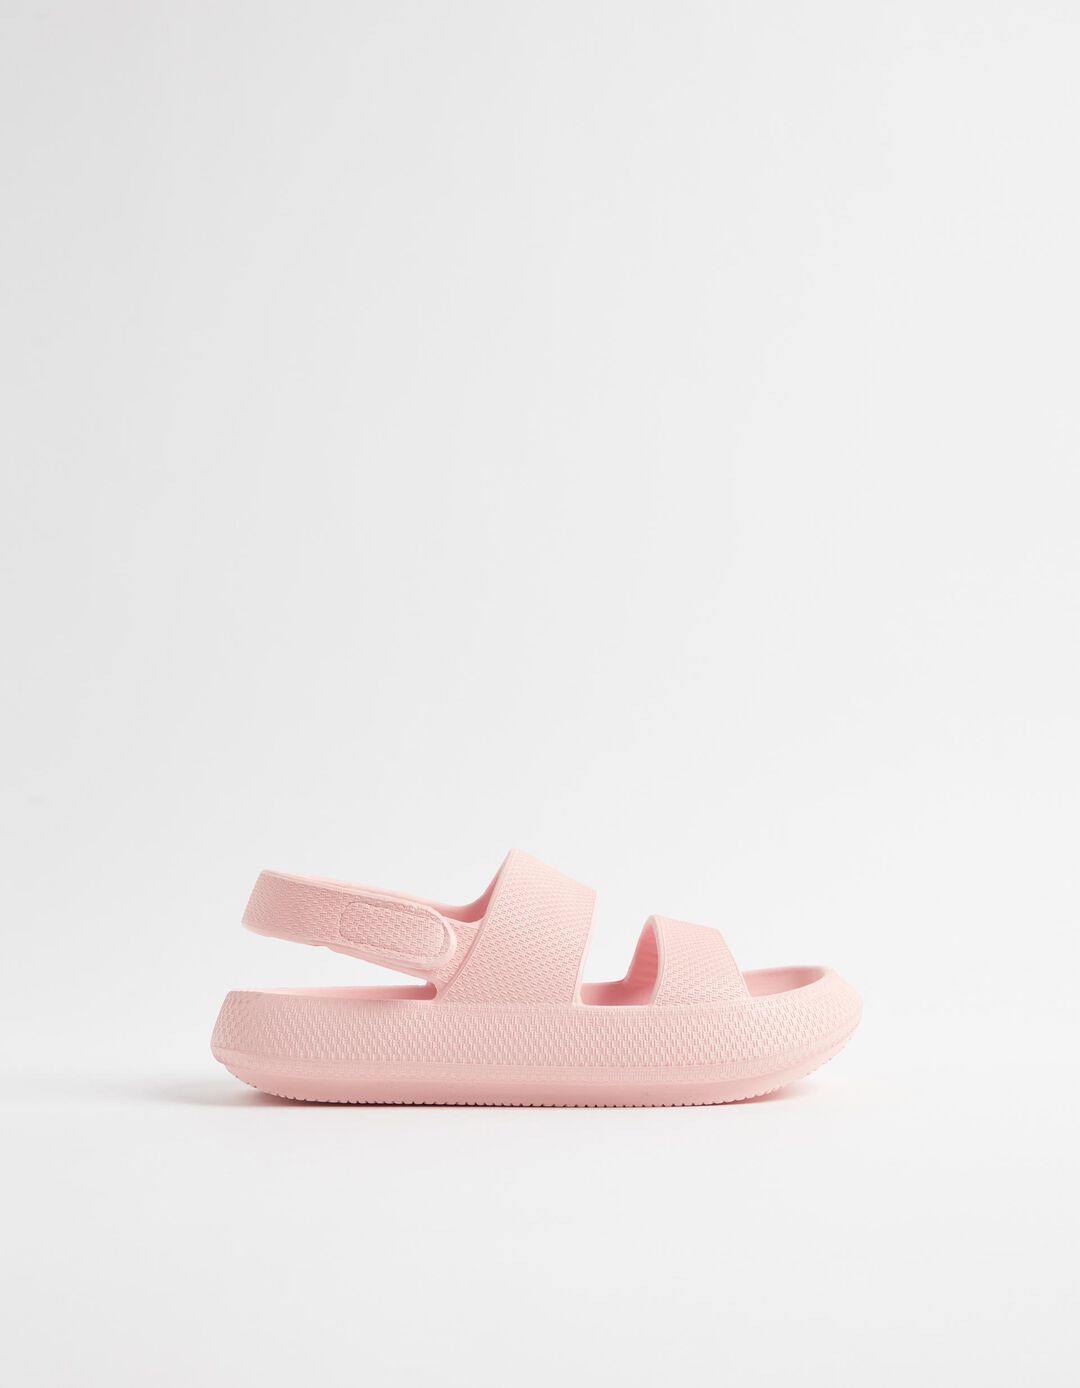 Rubber Sandals, Women, Light Pink